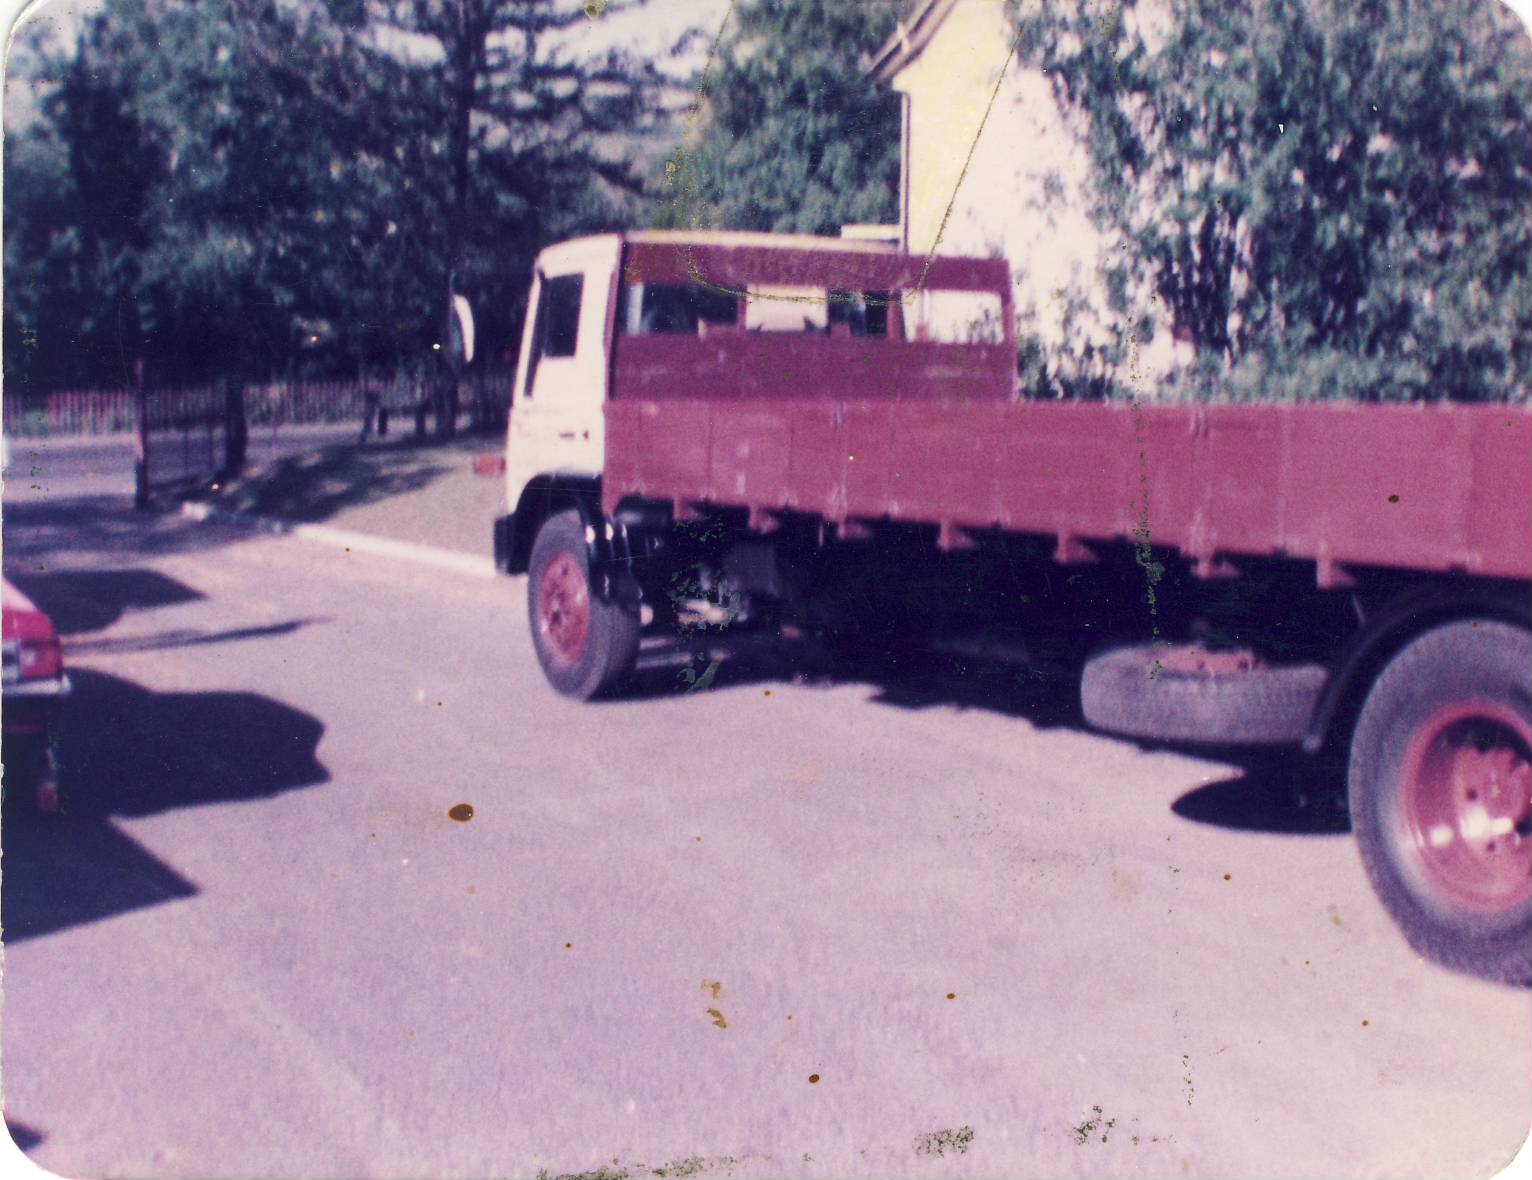 Nicholson Plastics truck in 1981